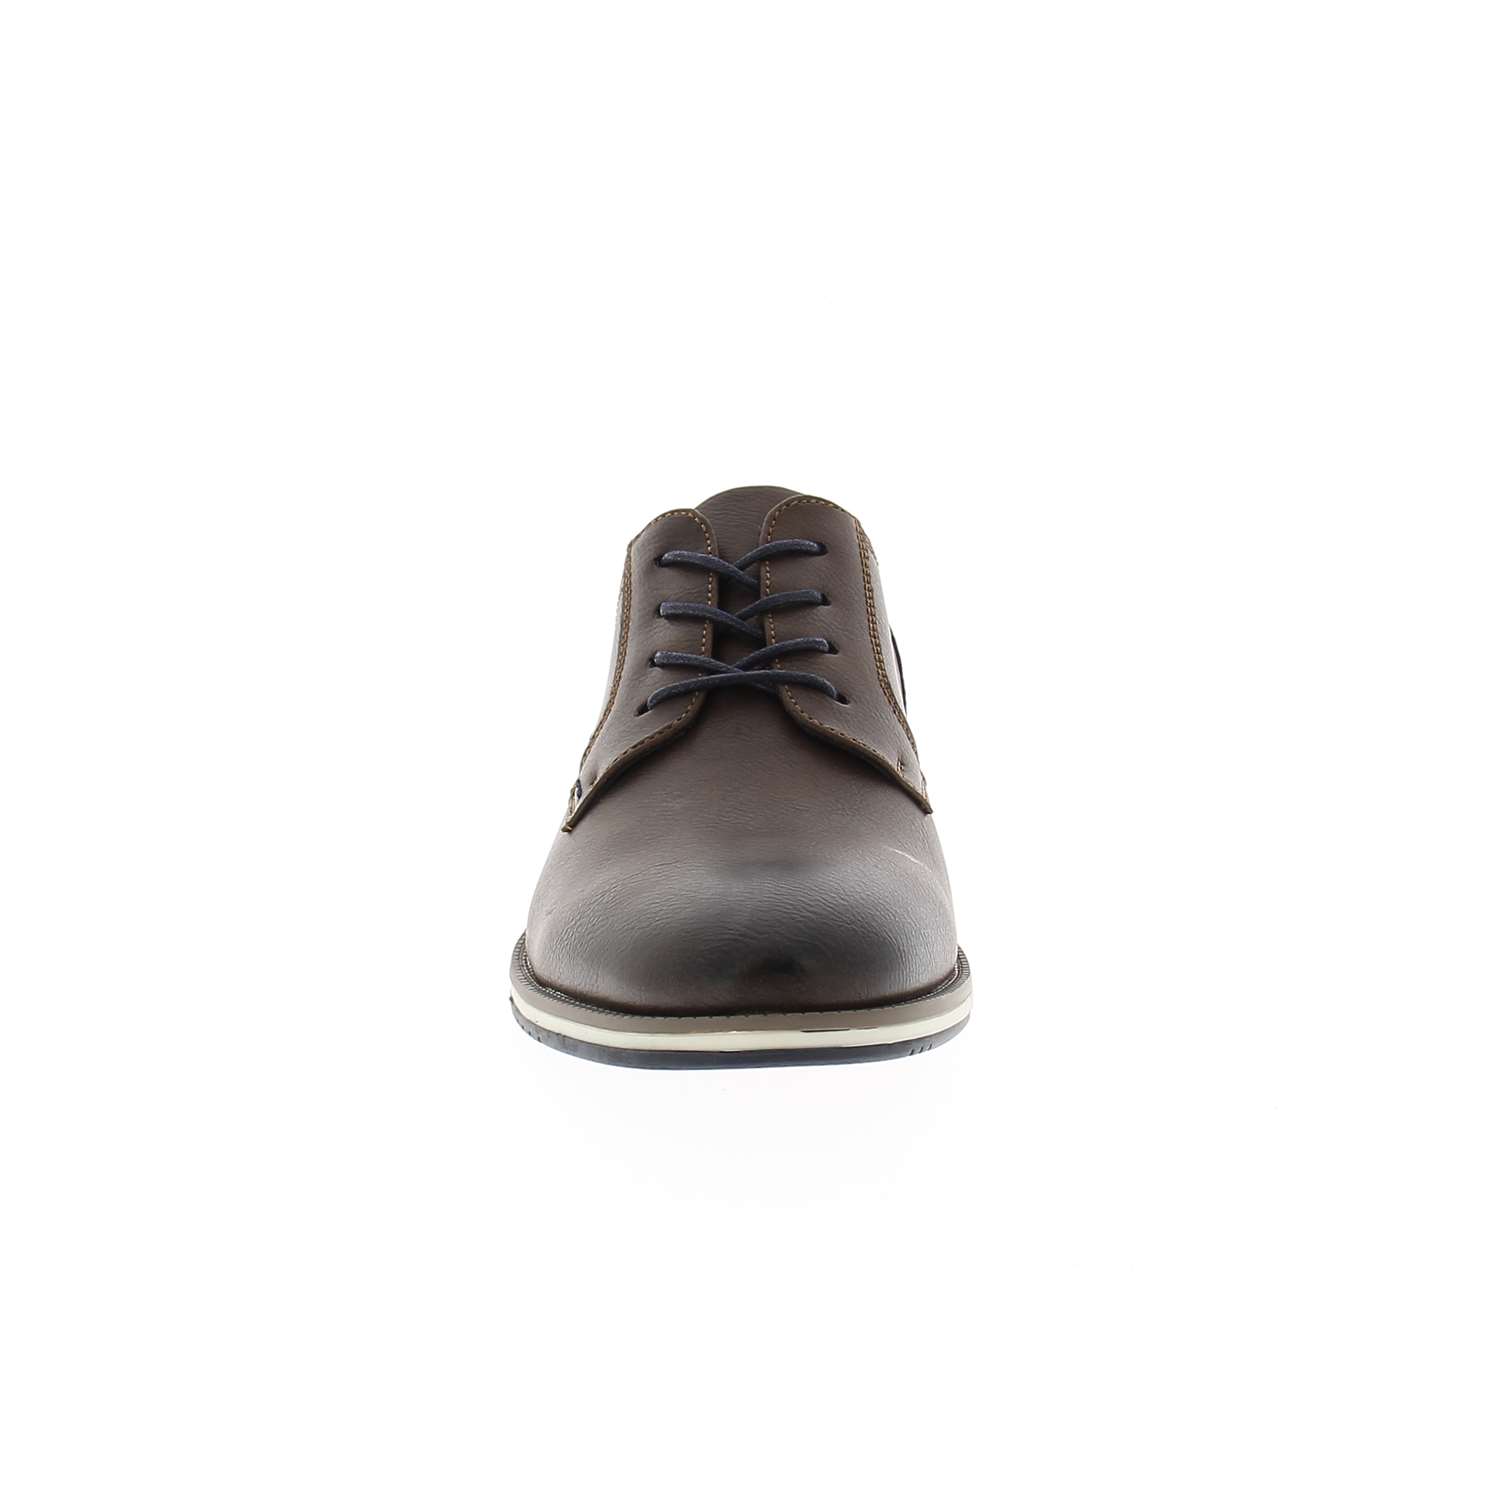 03 - KERPOIN     - XAPI - Chaussures à lacets - Textile